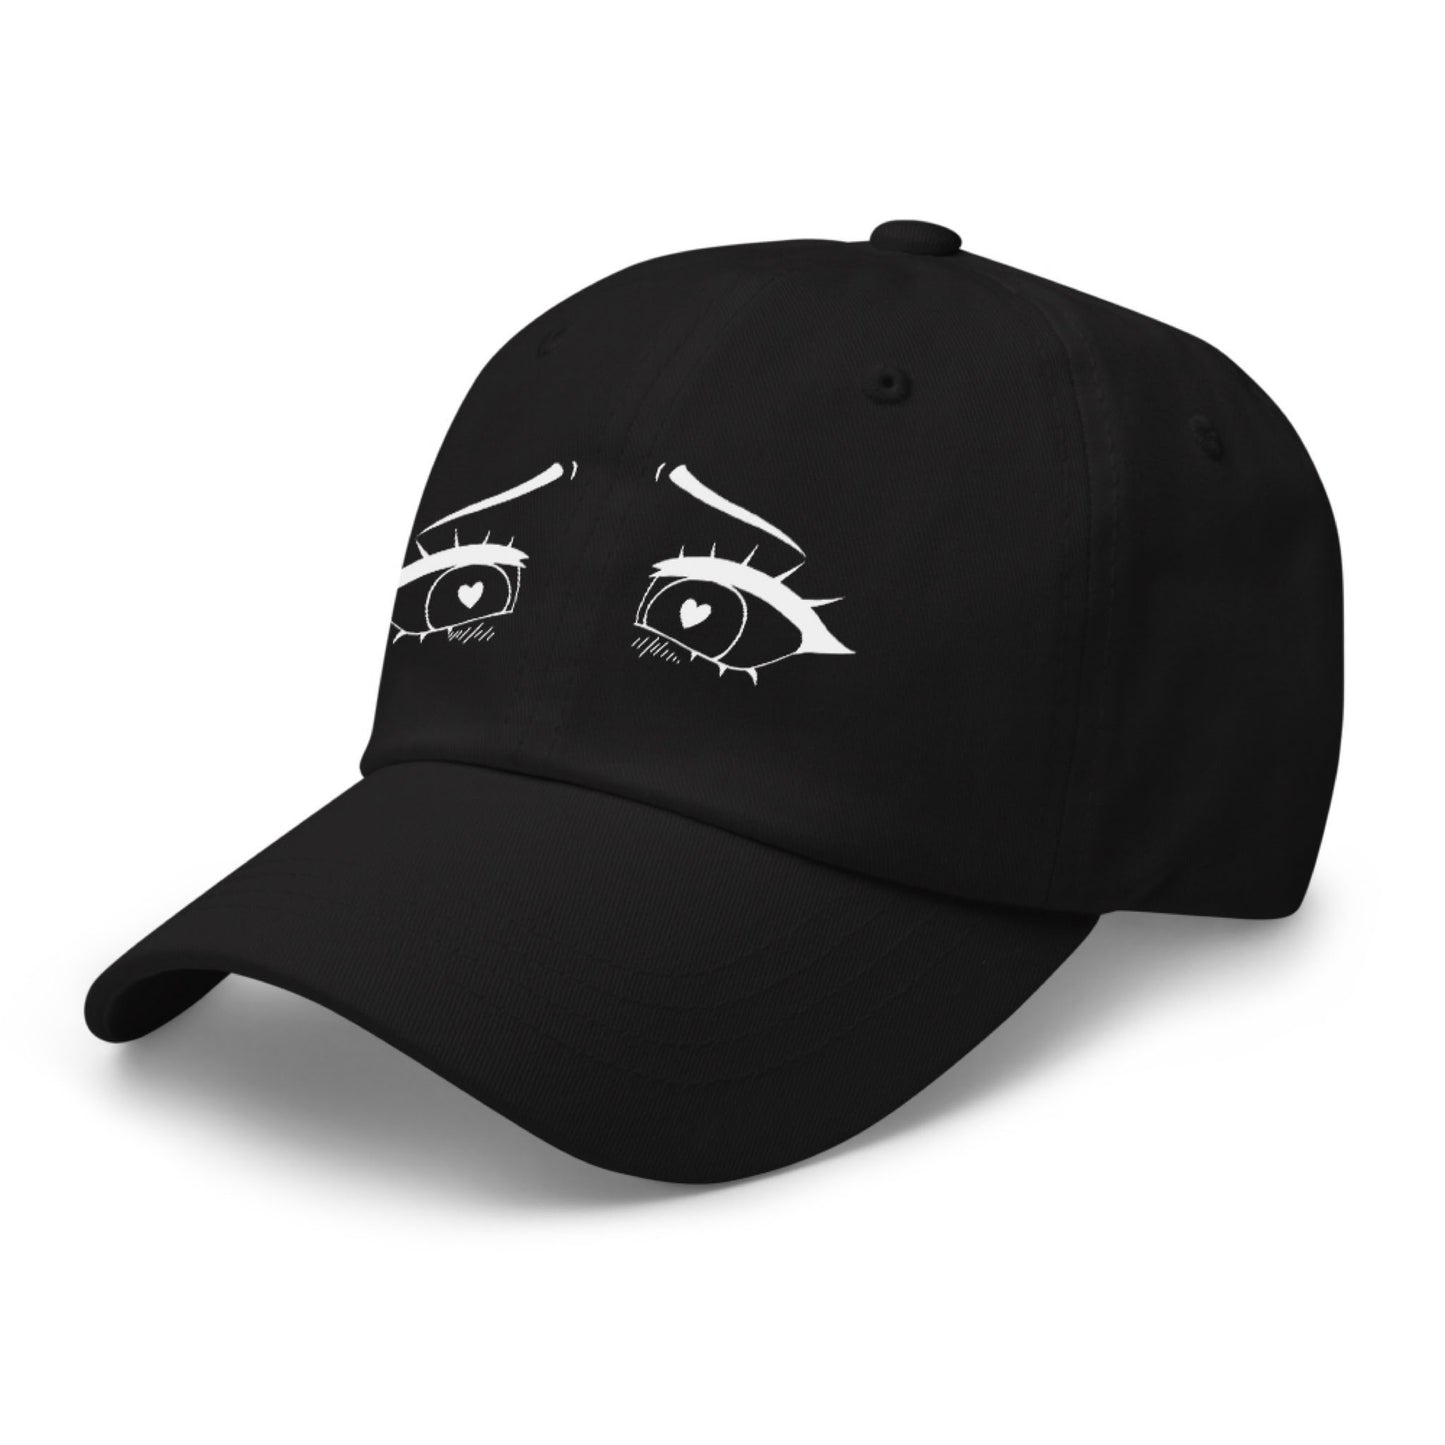 Ahegao Eyes Hat